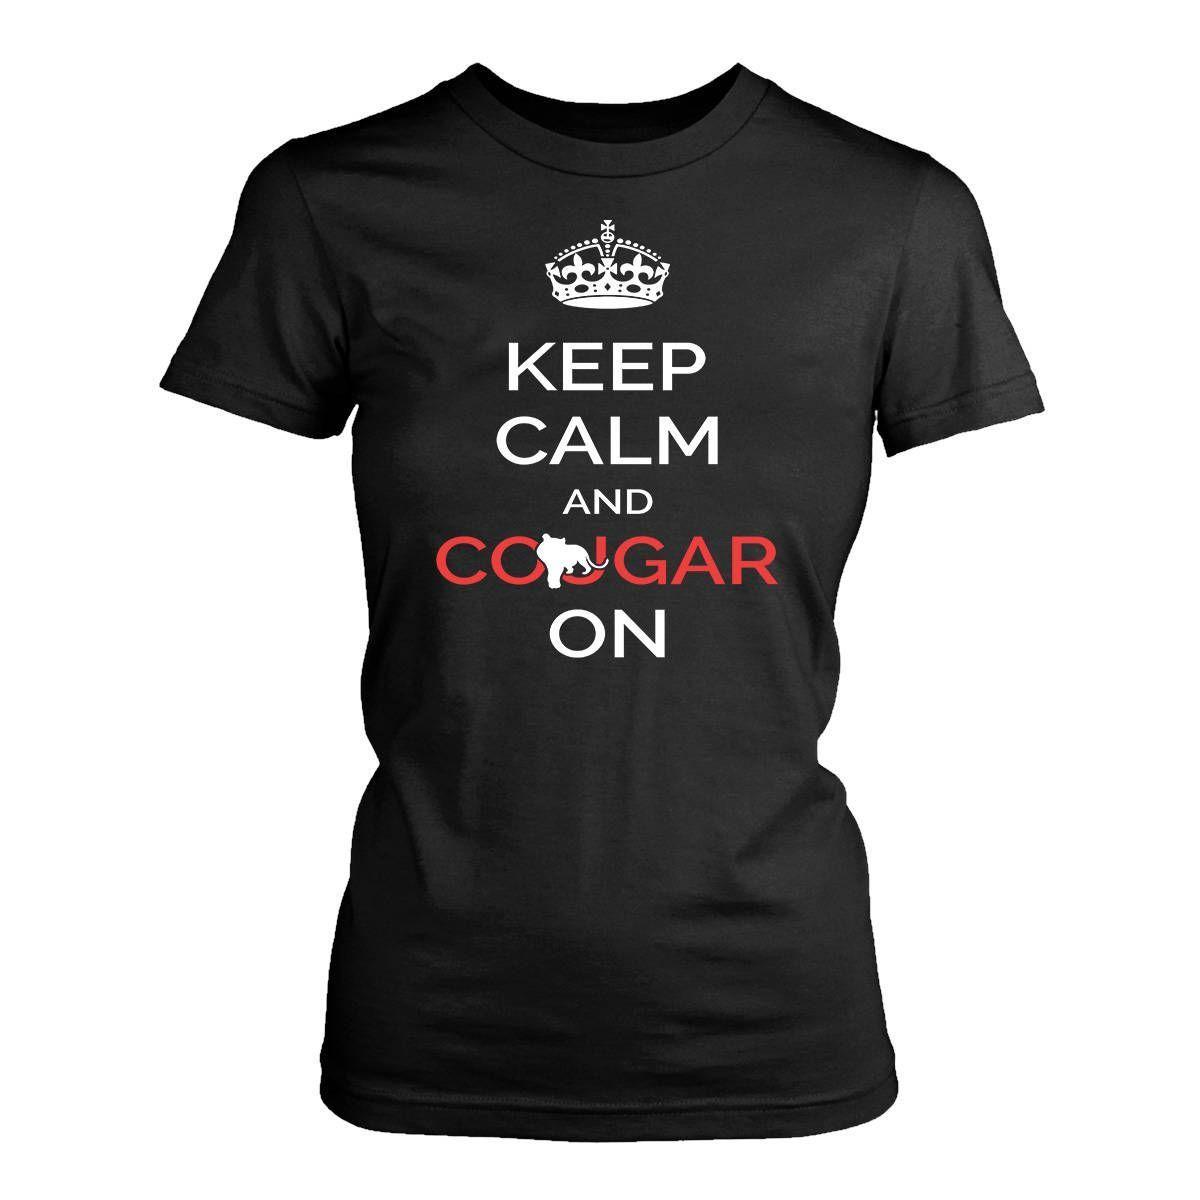 Funny cougar shirts